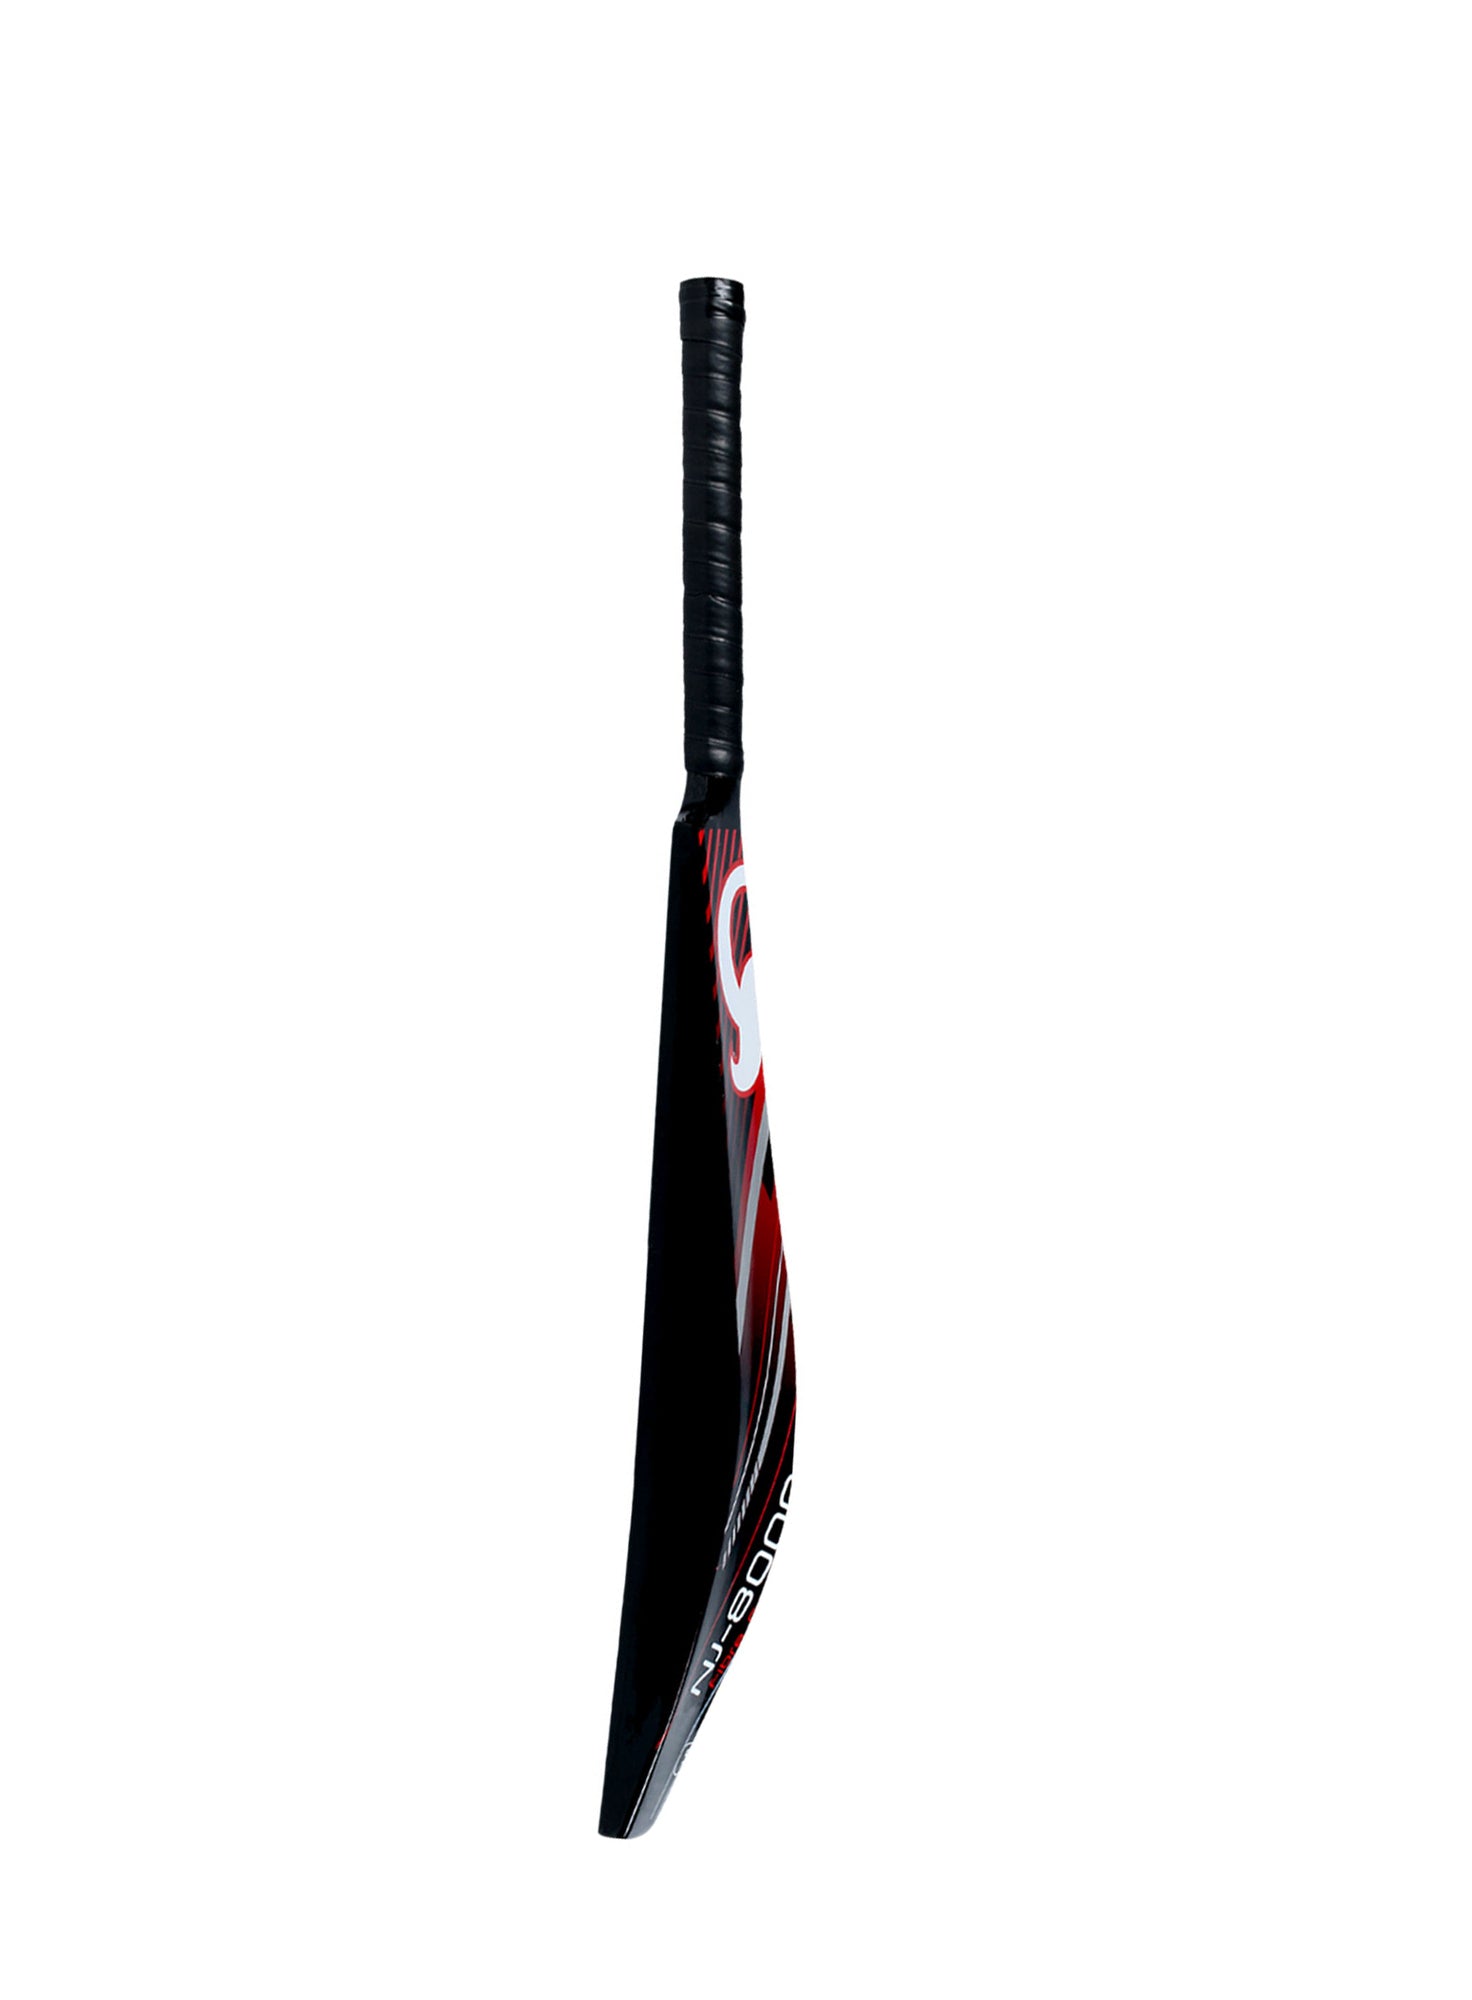 CA NJ 8000 Fiber Cricket Bat